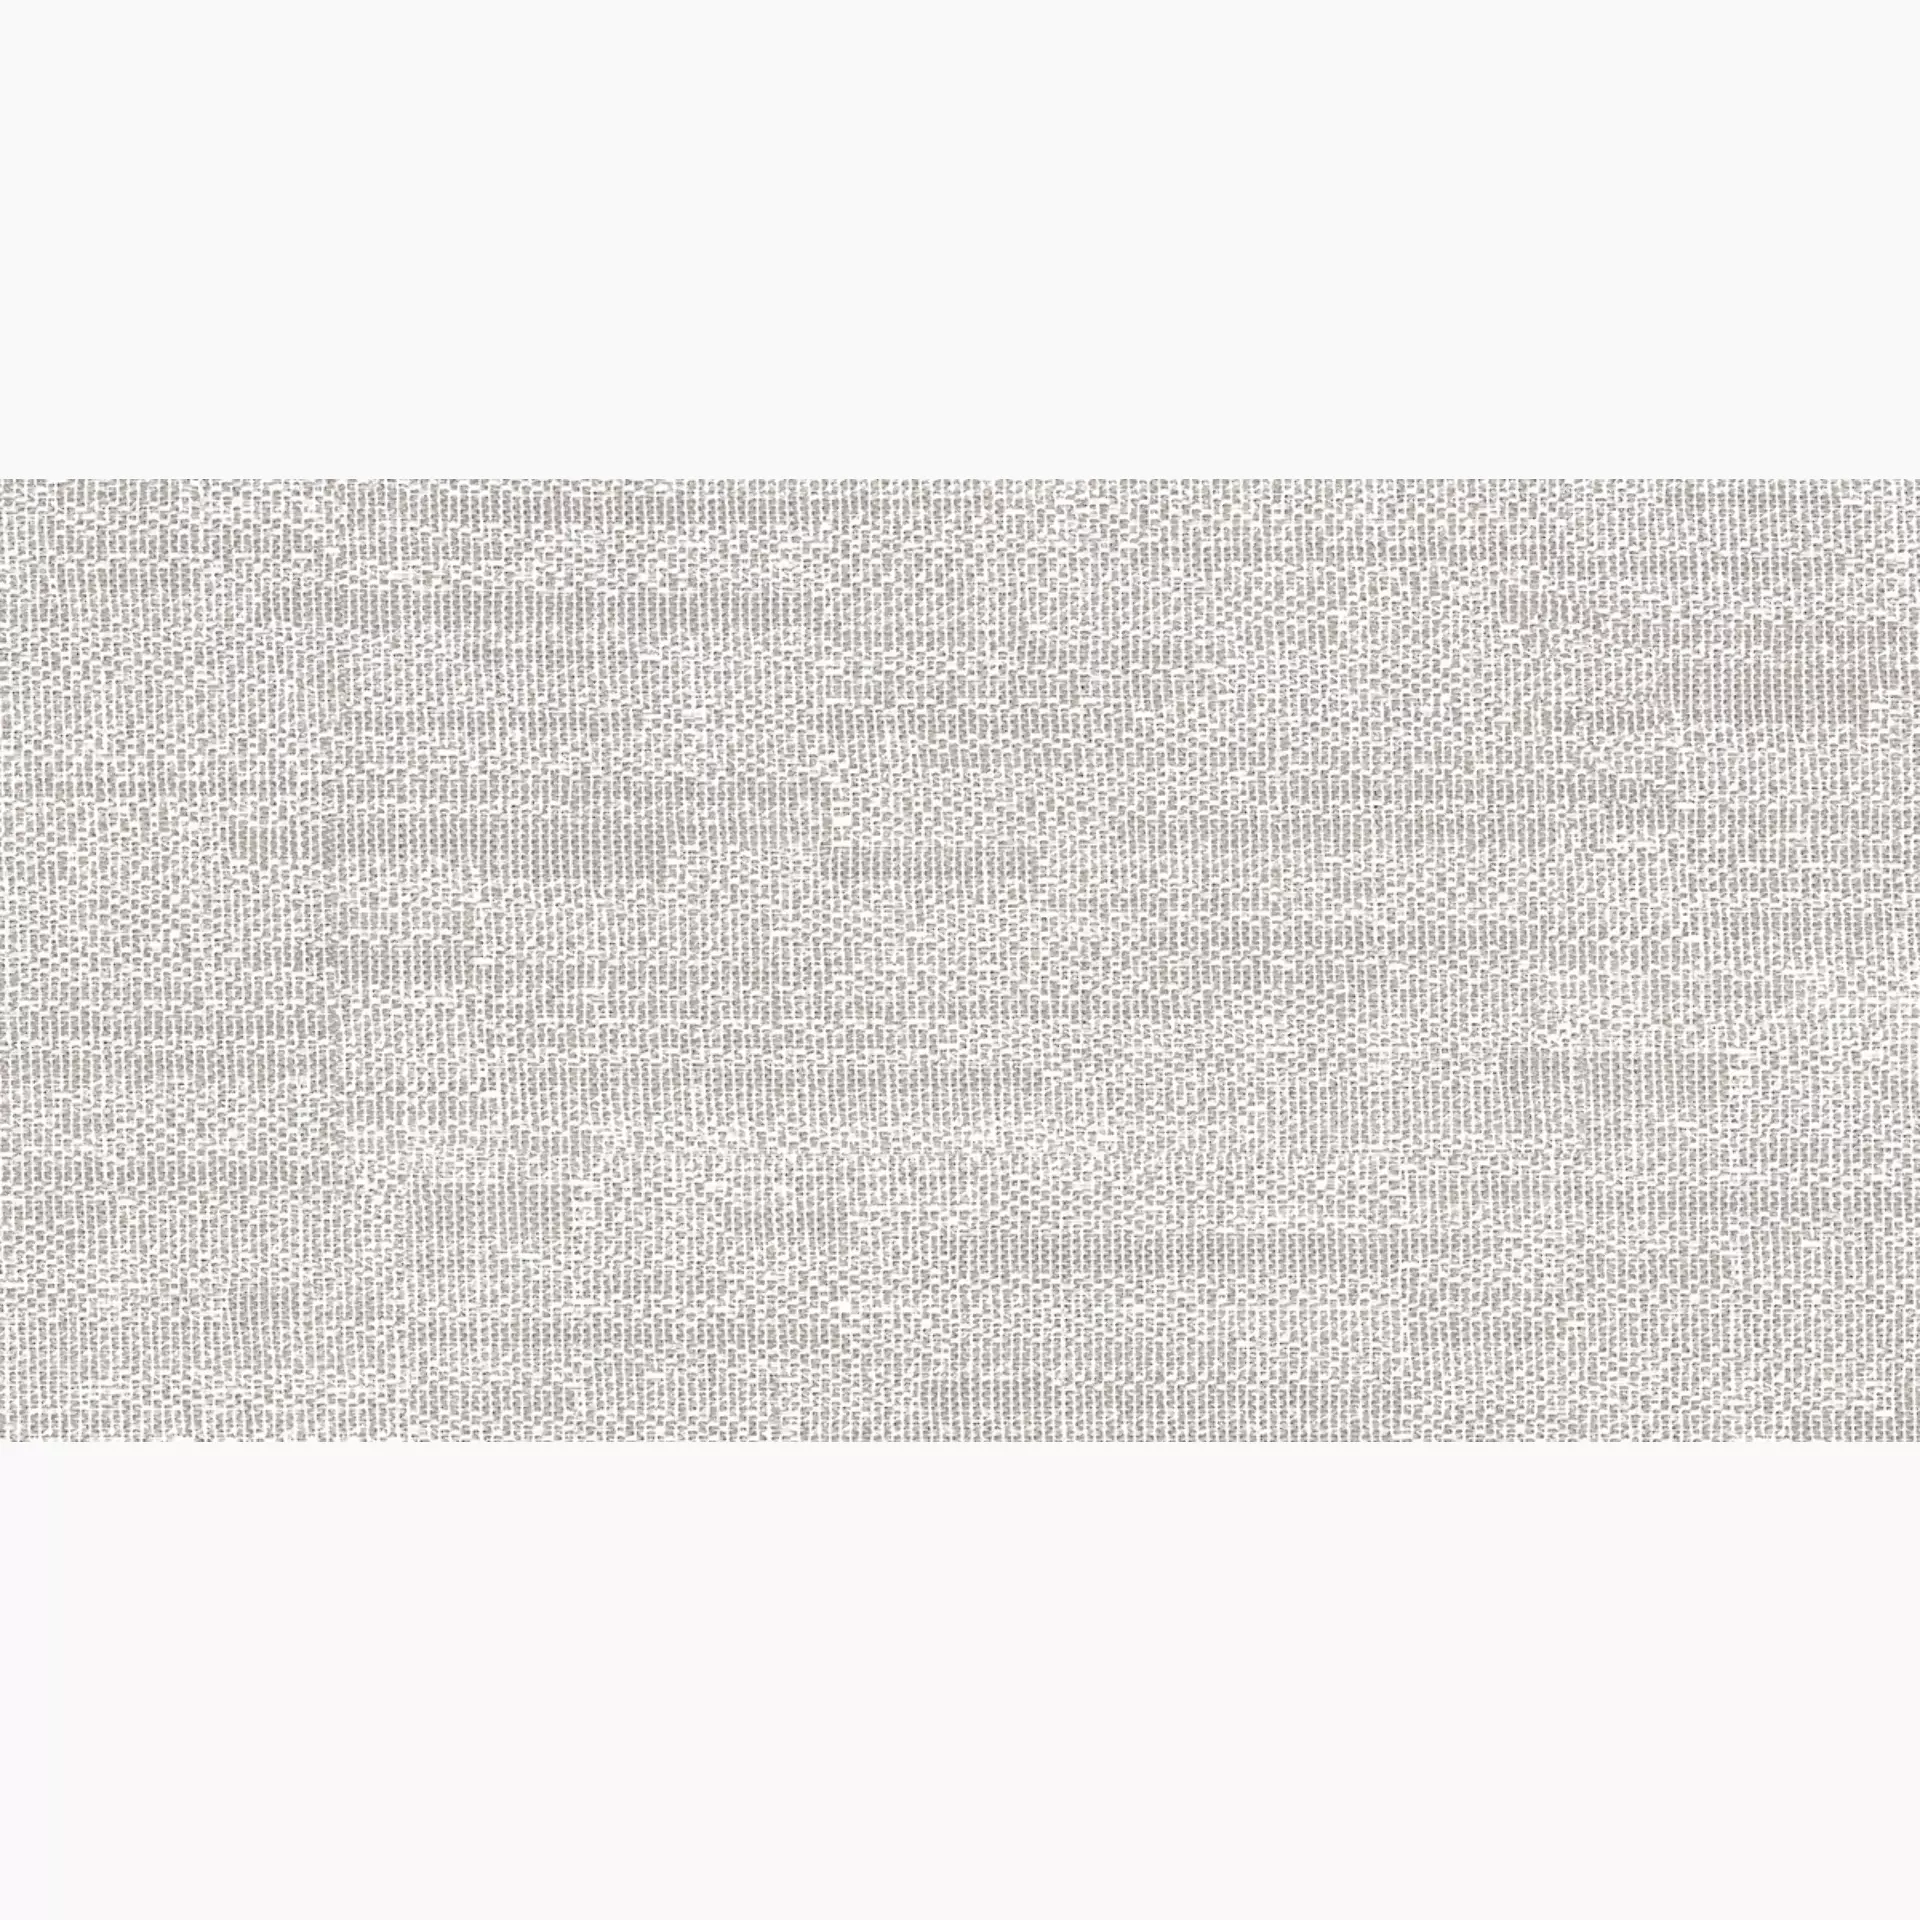 Sant Agostino Digitalart White Natural White CSADIAWH30 natur 30x60cm rektifiziert 10mm